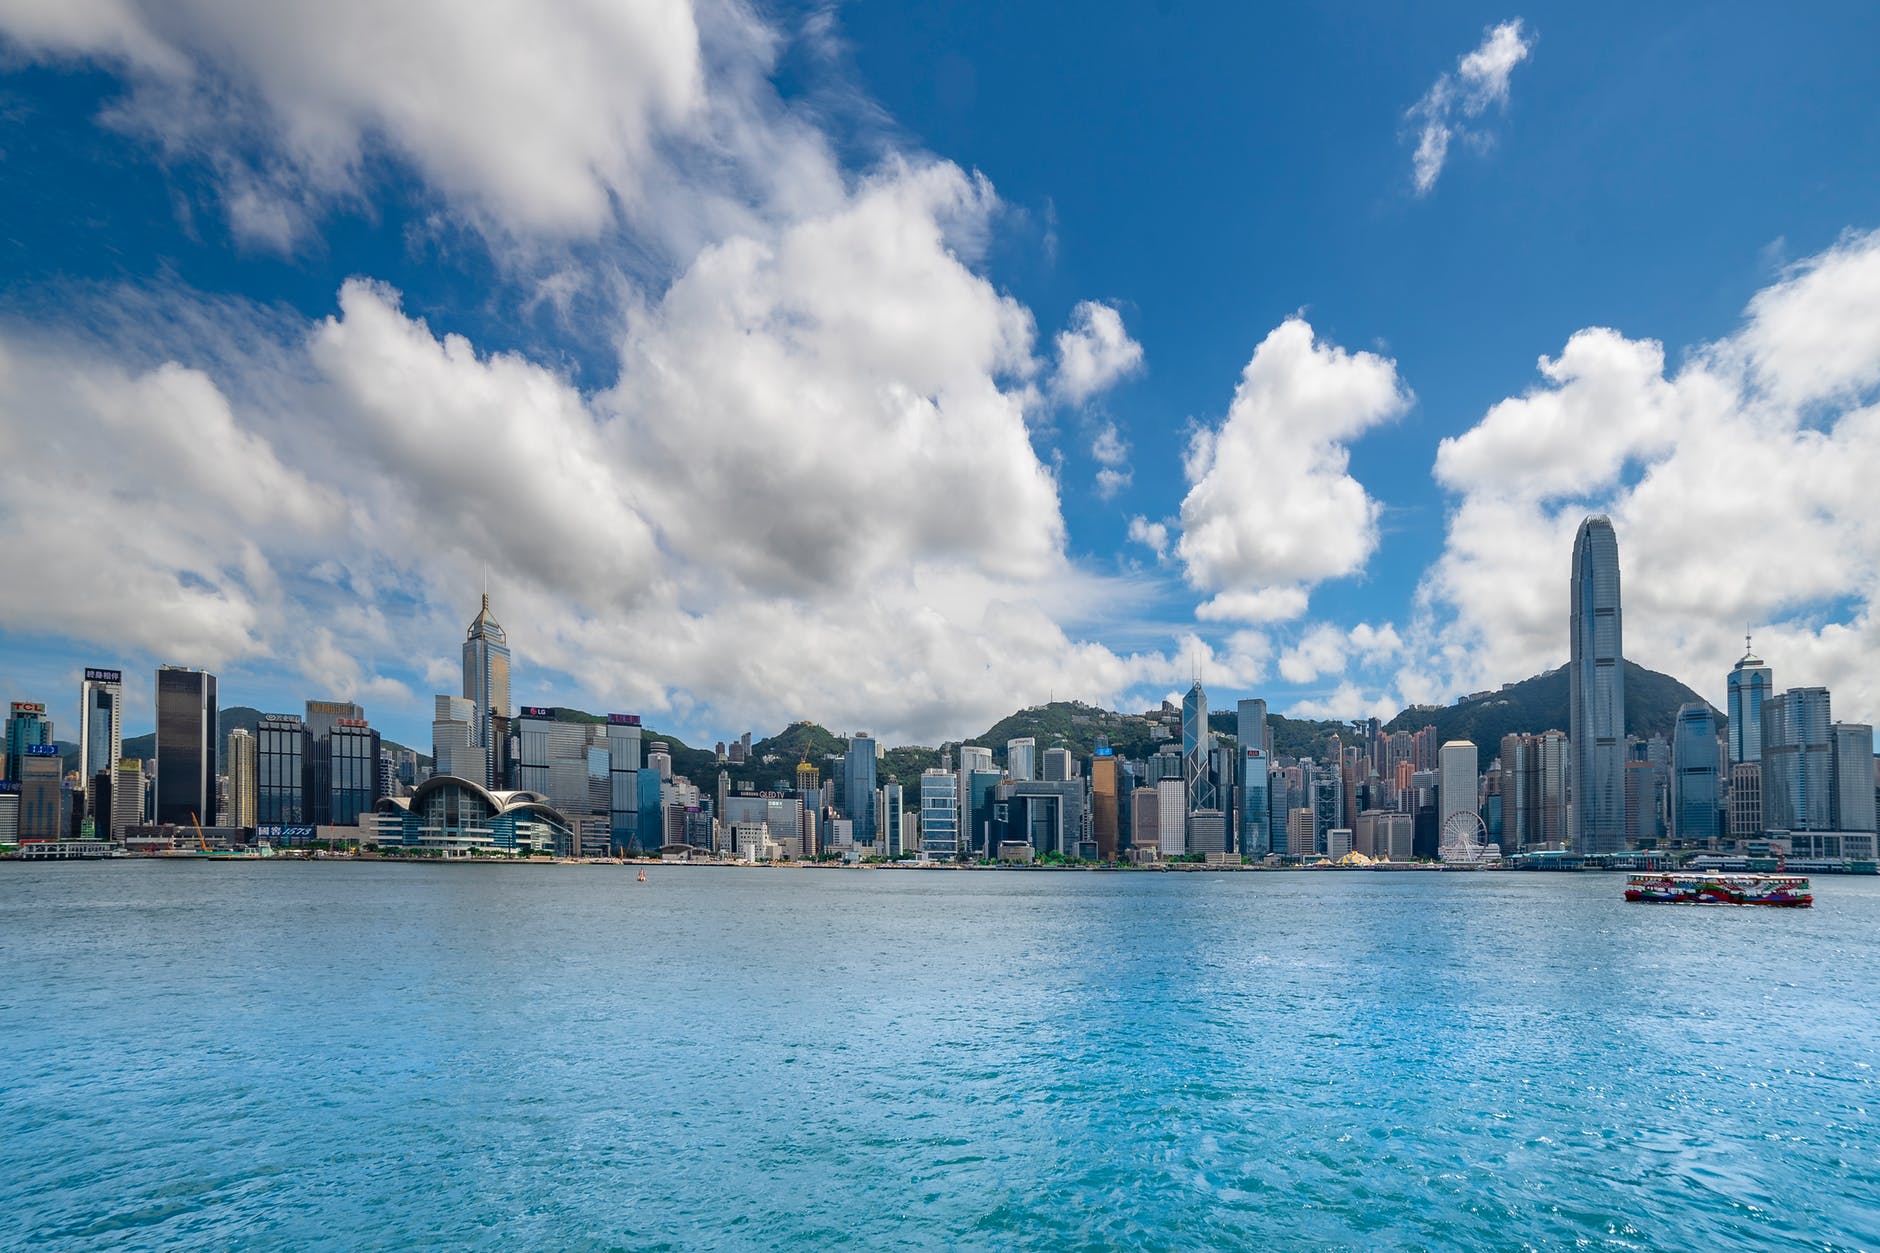 Аренда за $2 миллиона - новый рекорд Гонконга